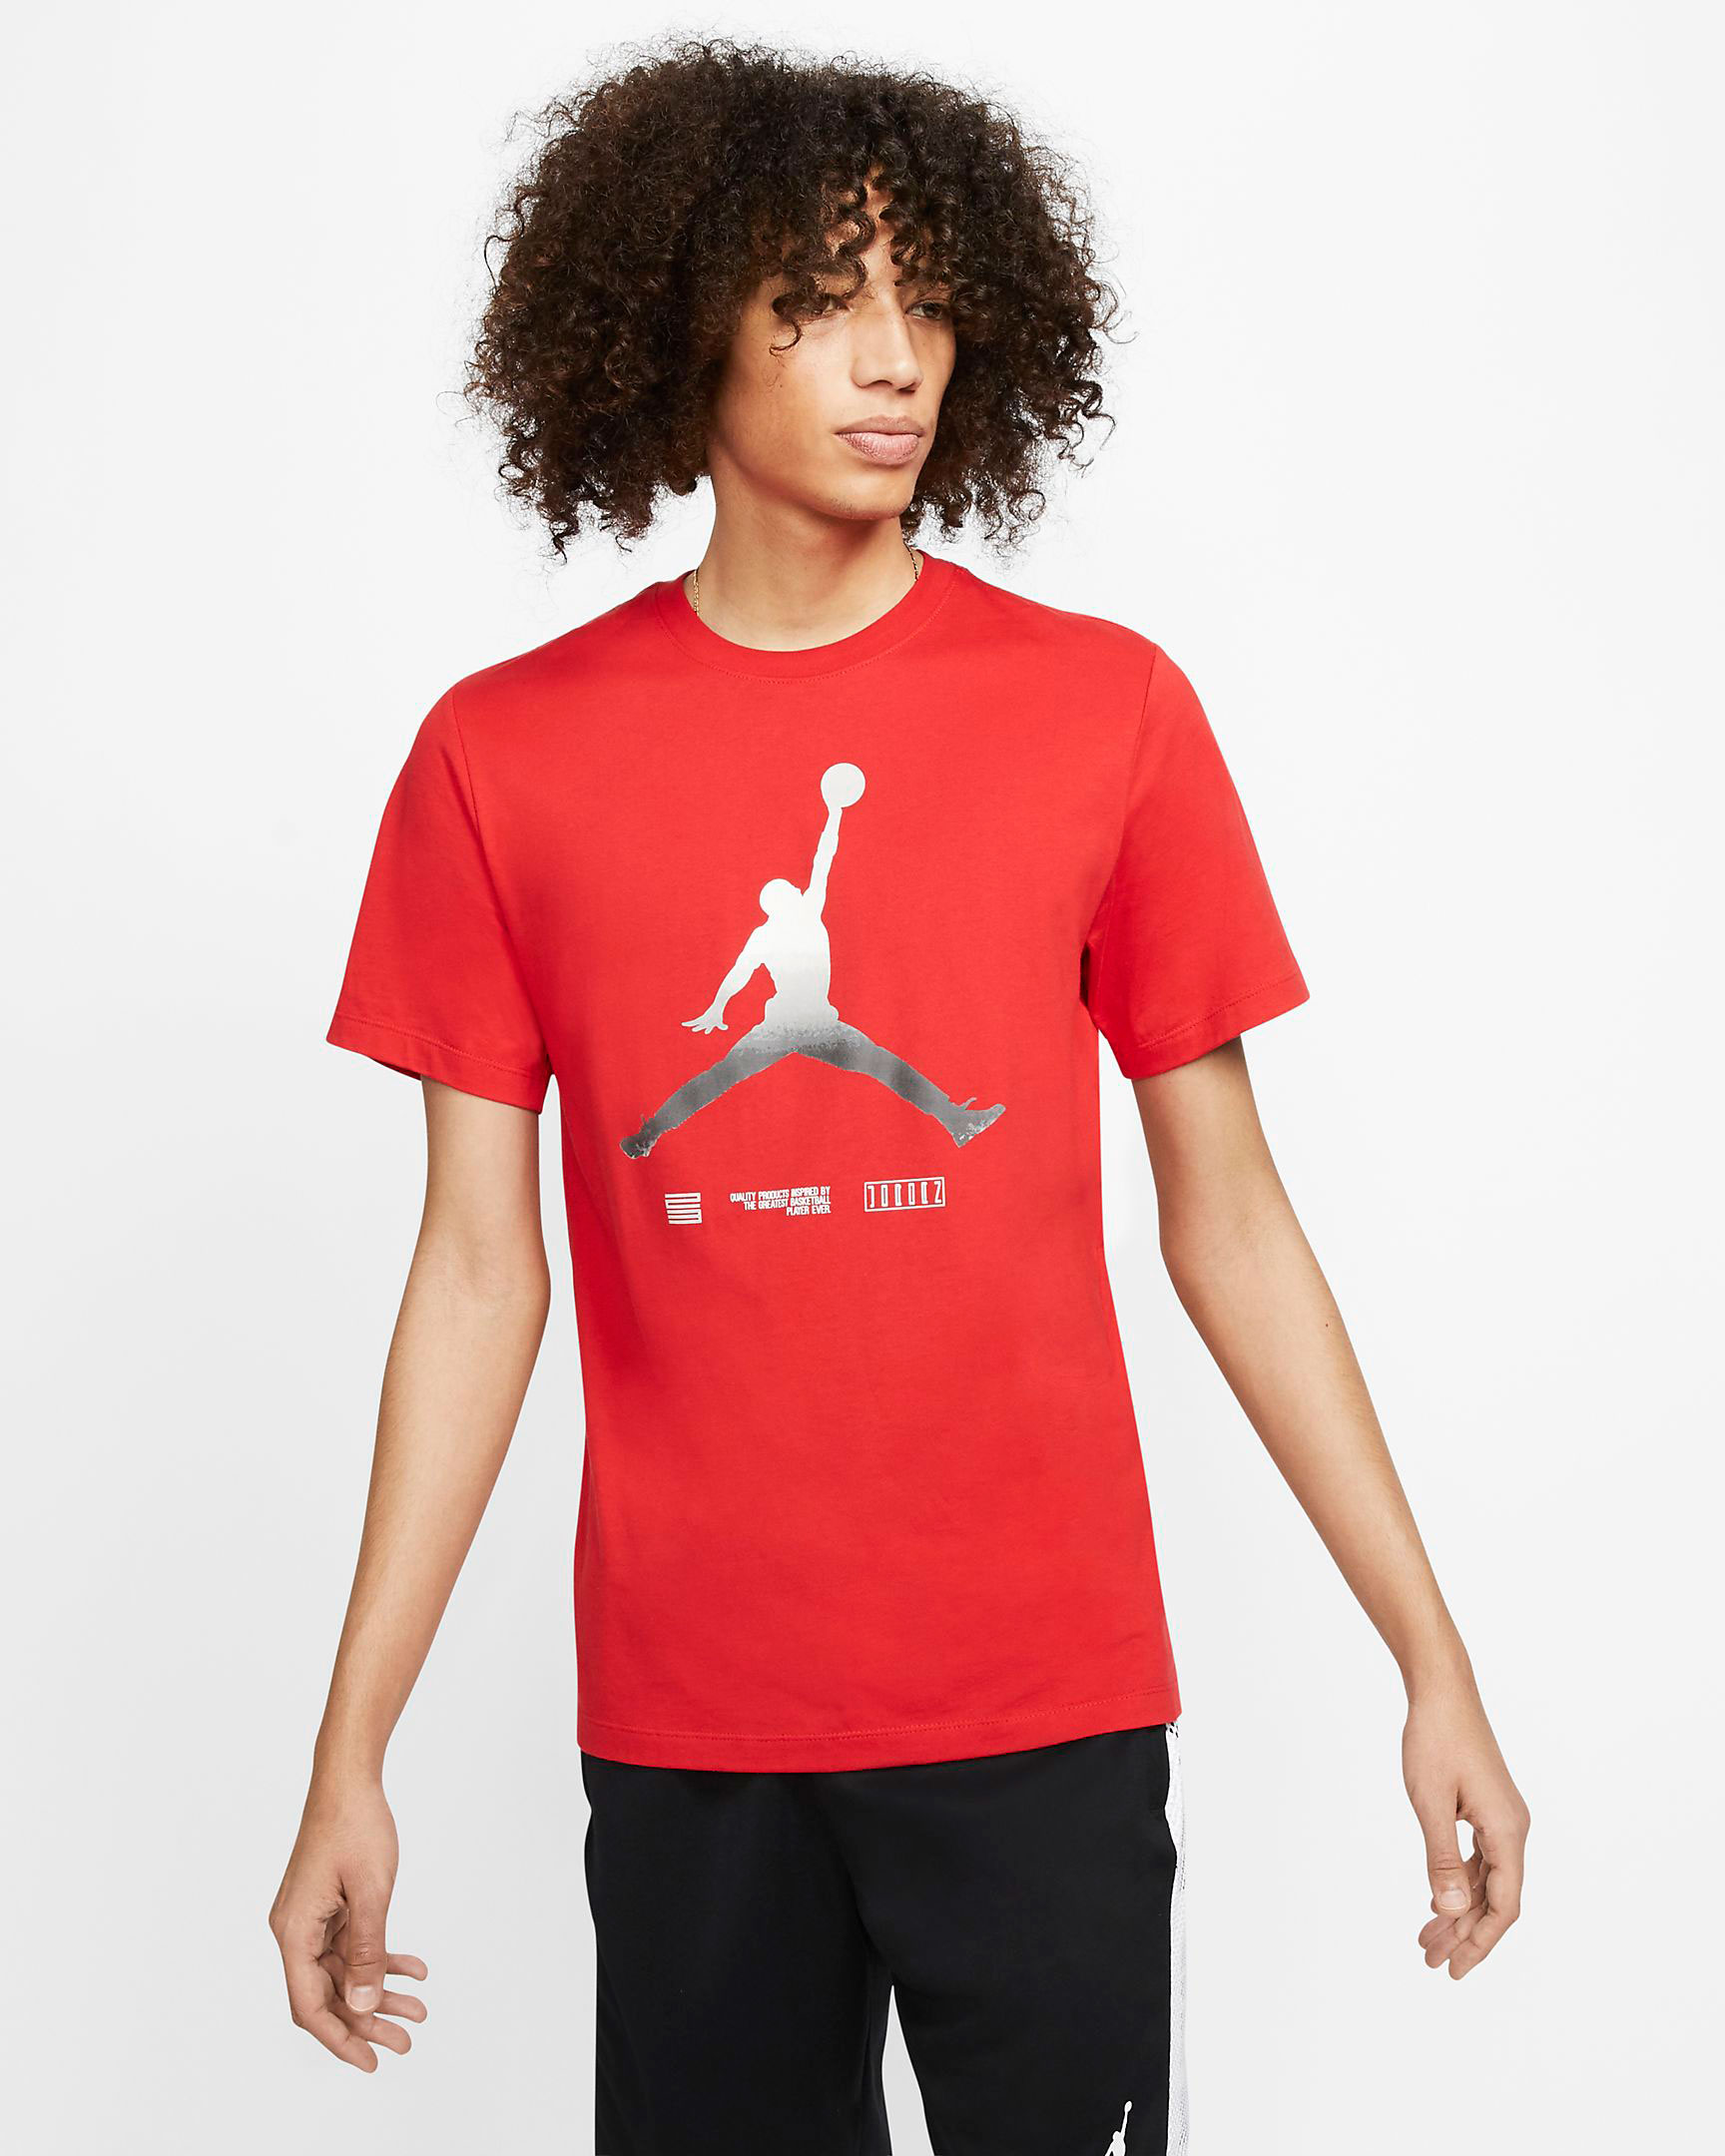 jordan-11-low-concord-bred-jumpman-shirt-red